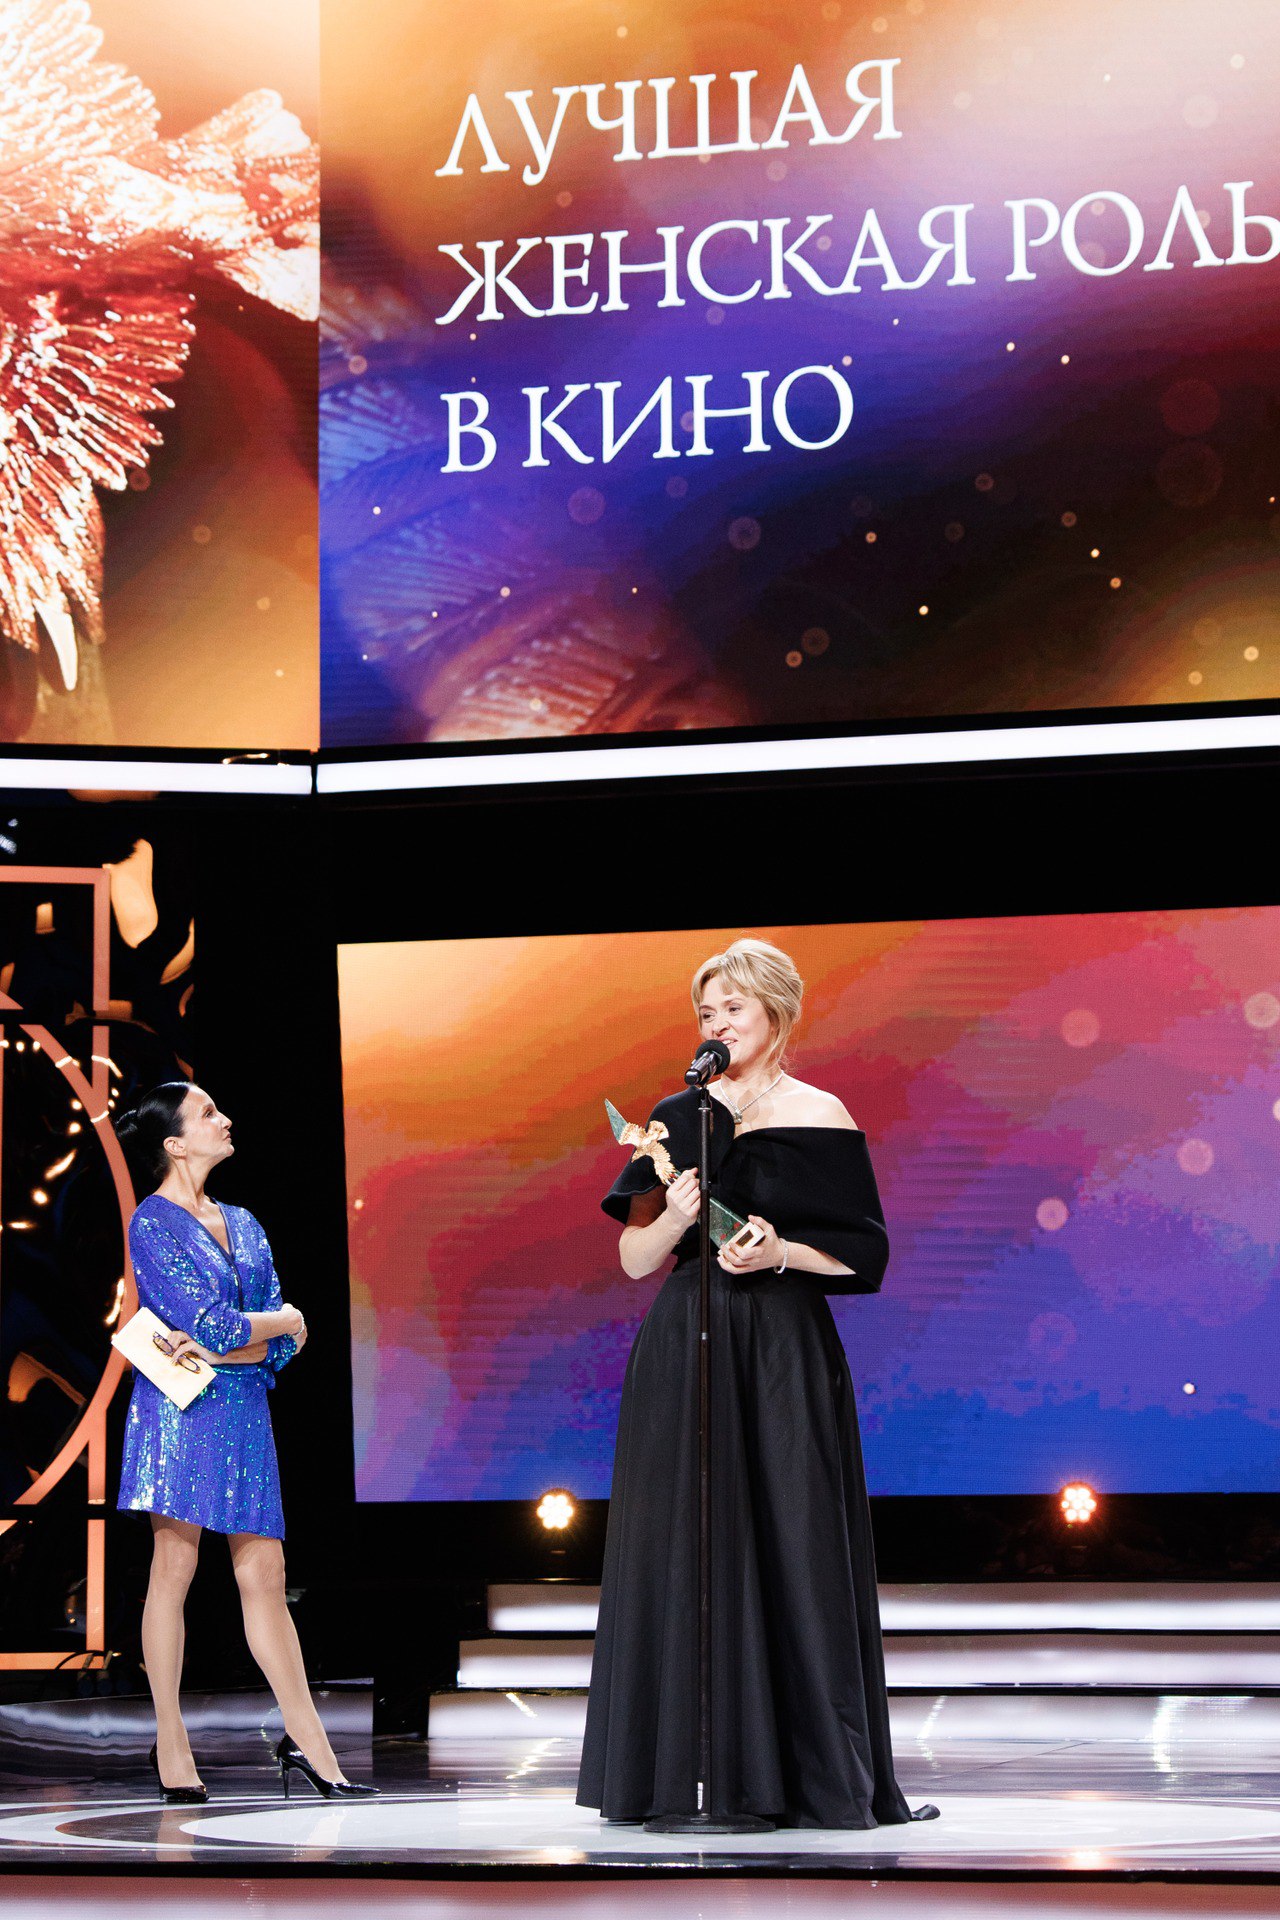 Получая кинонаграду, Анна Михалкова пошутила, что тоже приняла участие в «голой вечеринке». Видео полностью обнаженной Анны Михалковой с этой «вечеринки»